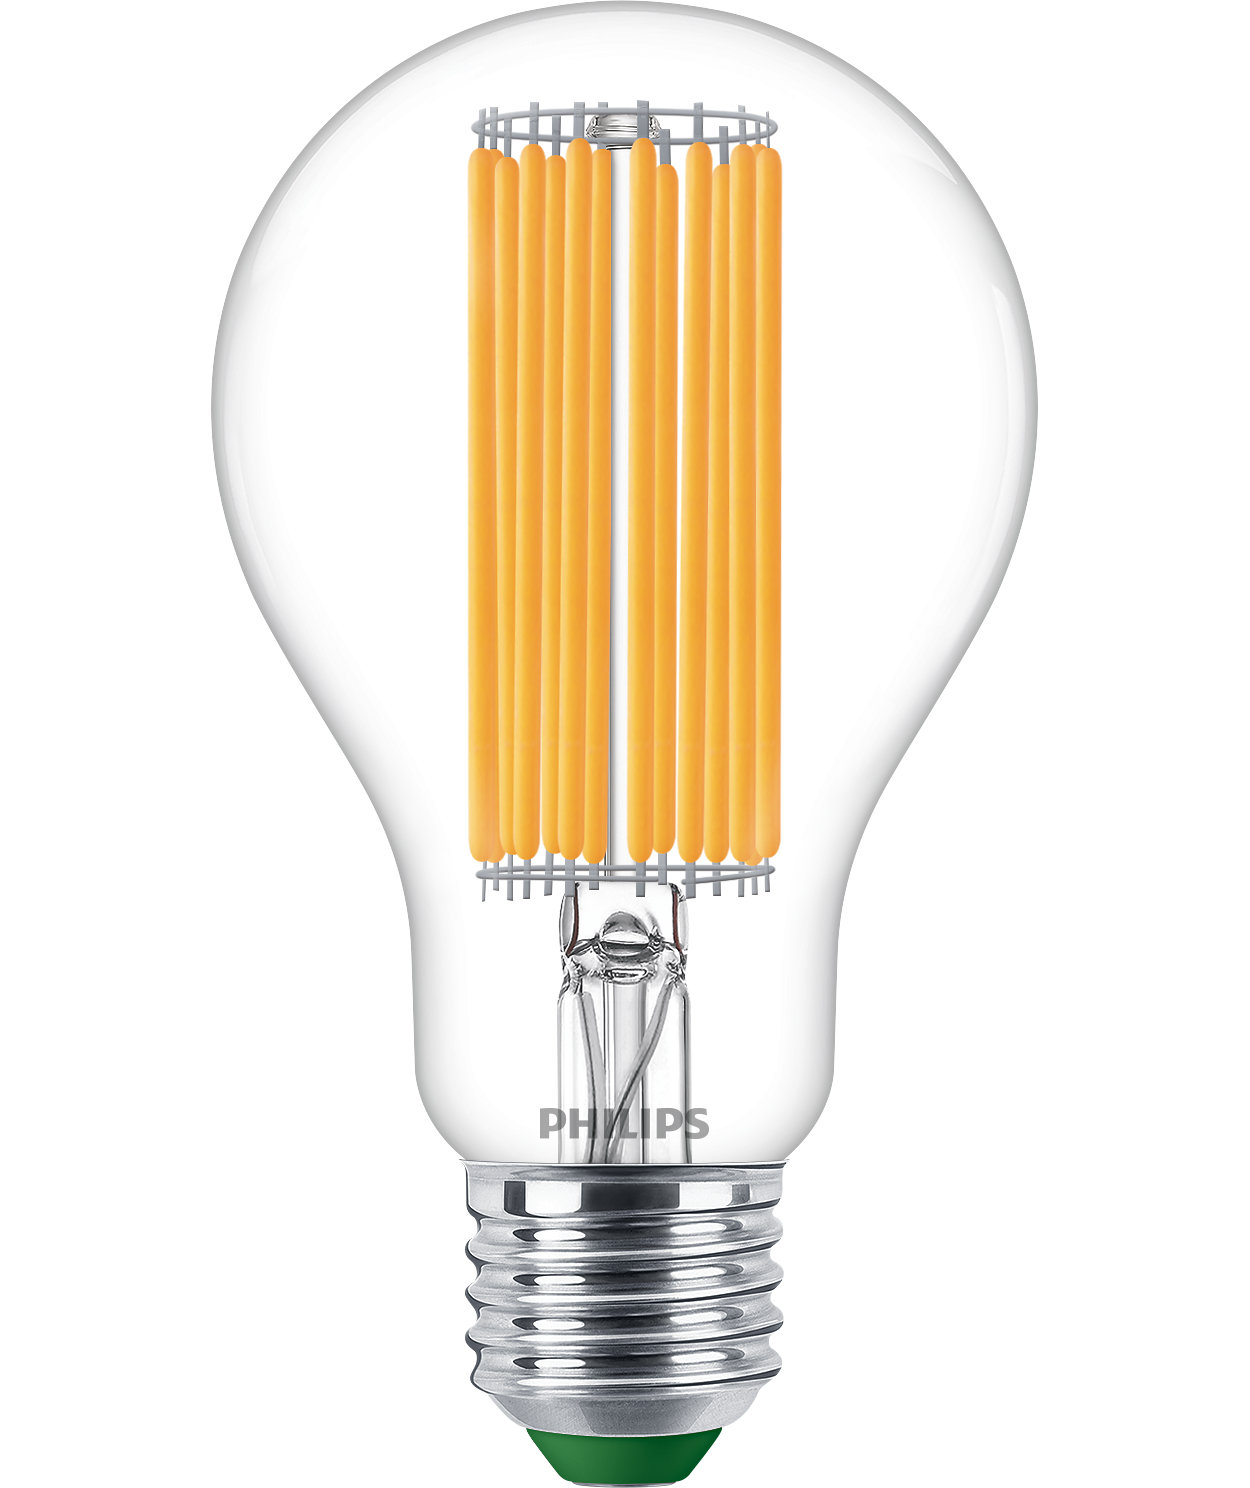 Náš nejúčinnější LED zdroj